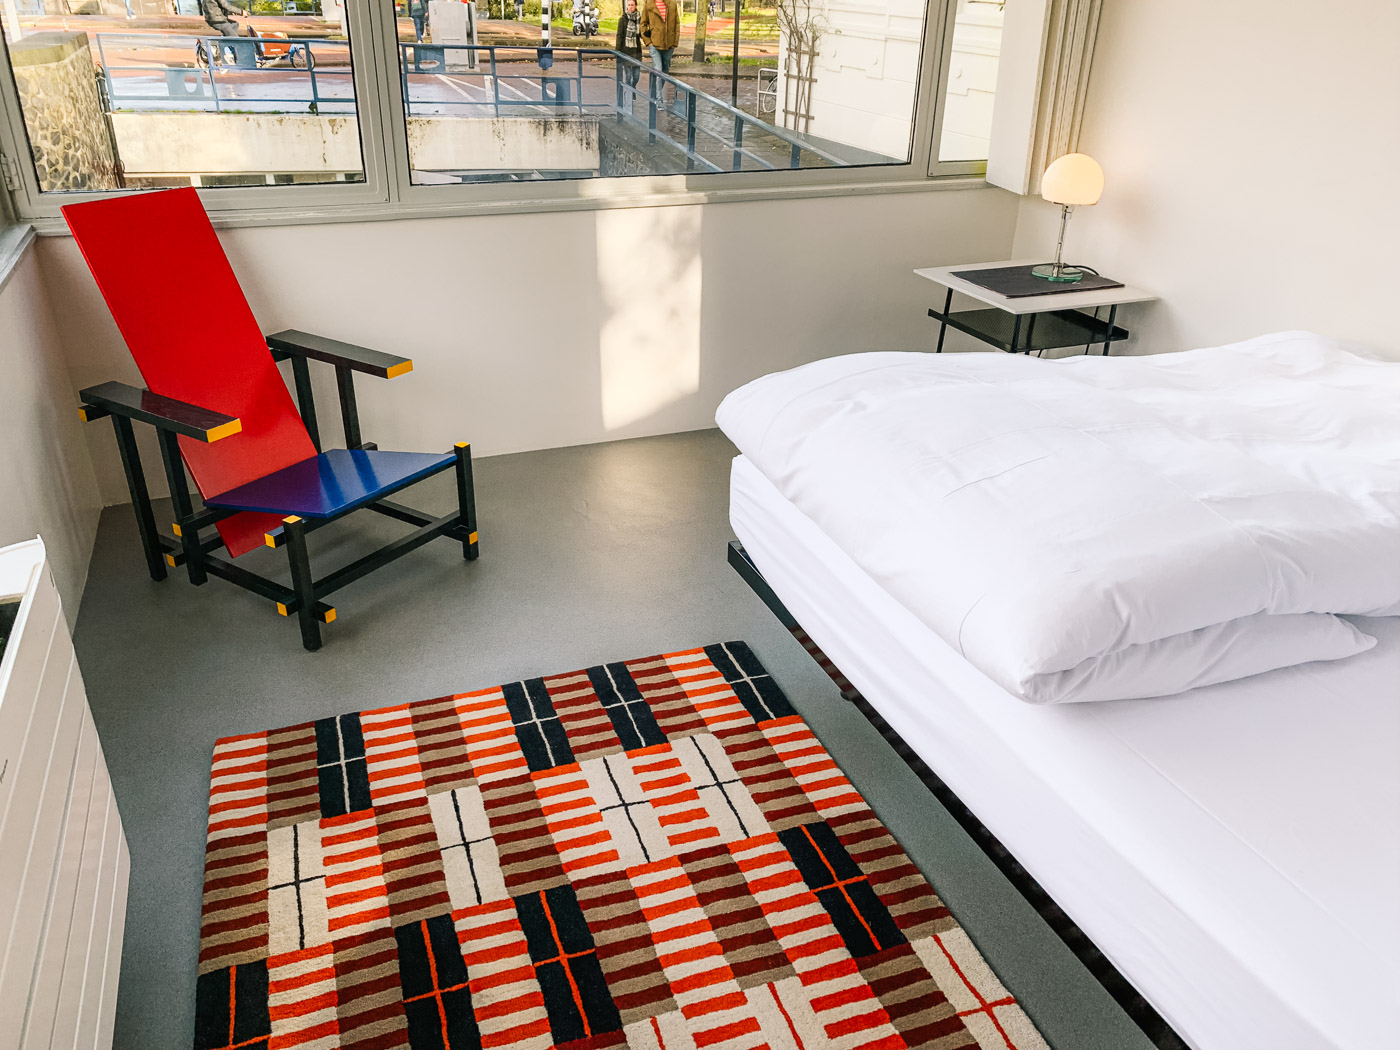 Vakantie geestelijke gezondheid niveau Slapen in een Brugwachtershuisje in Amsterdam in Rietveld stijl |  WeAreTravellers